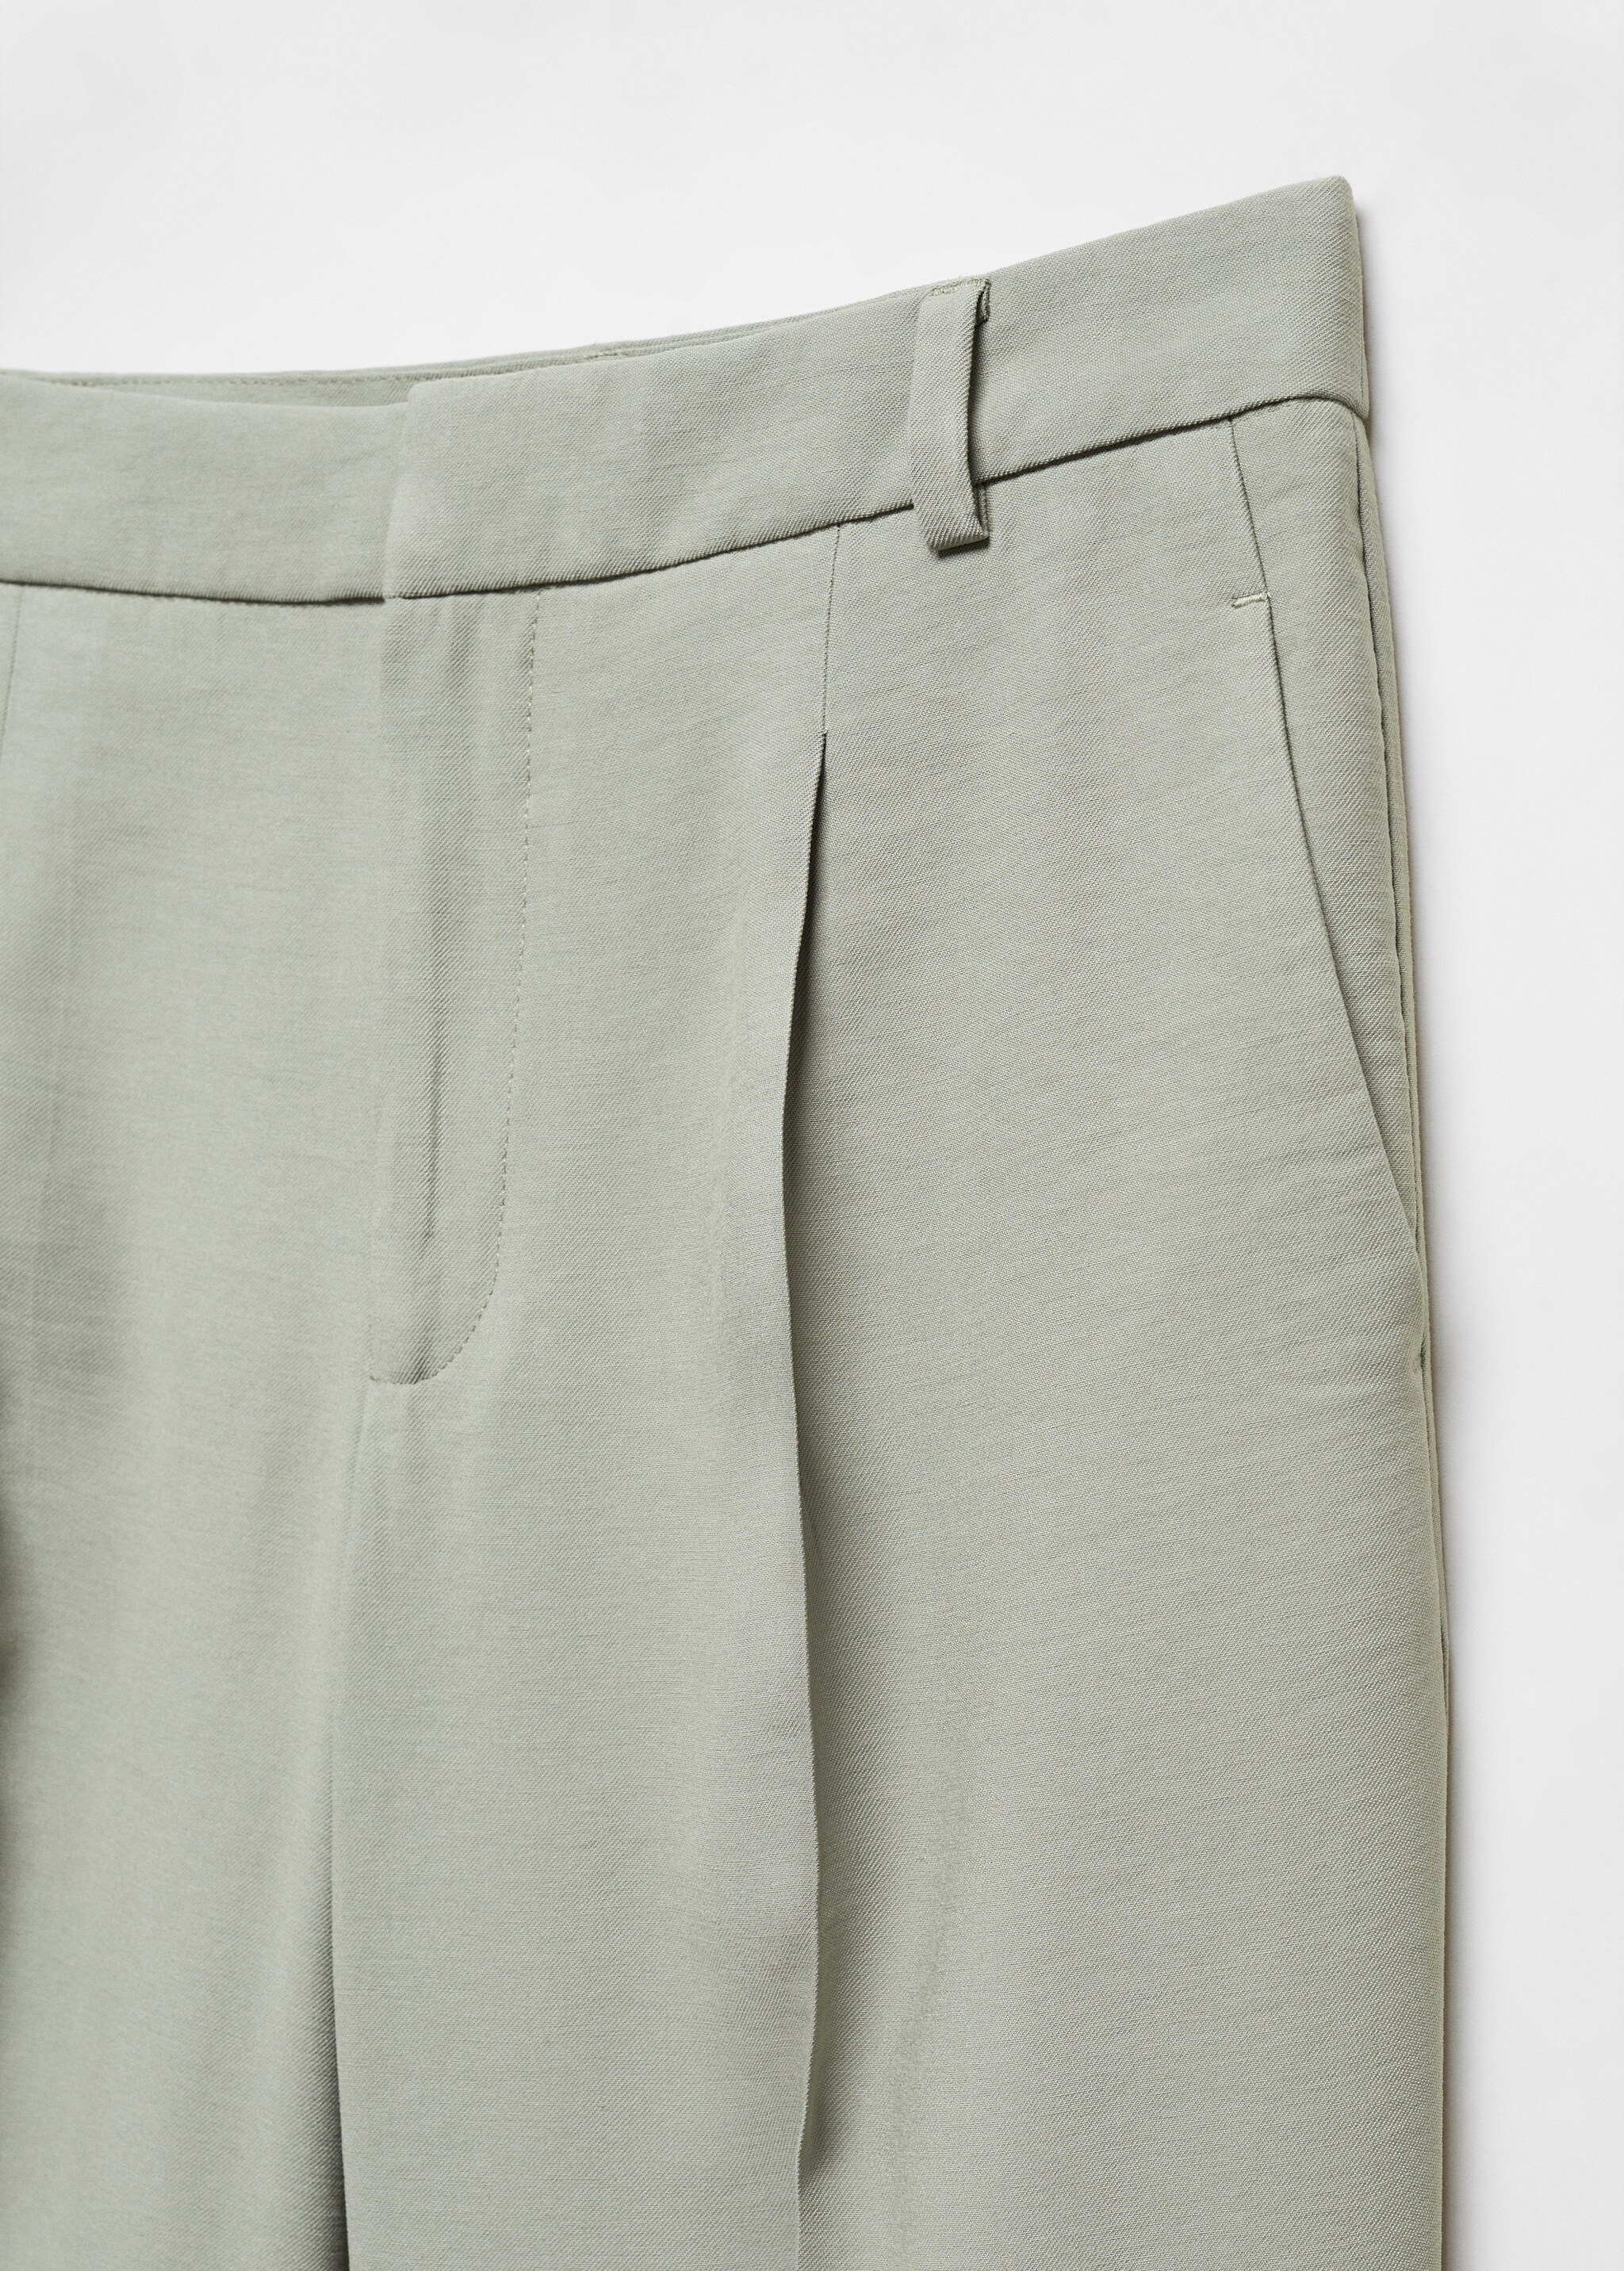 Pilili düz kesim pantolon  - Ürün detayı 8